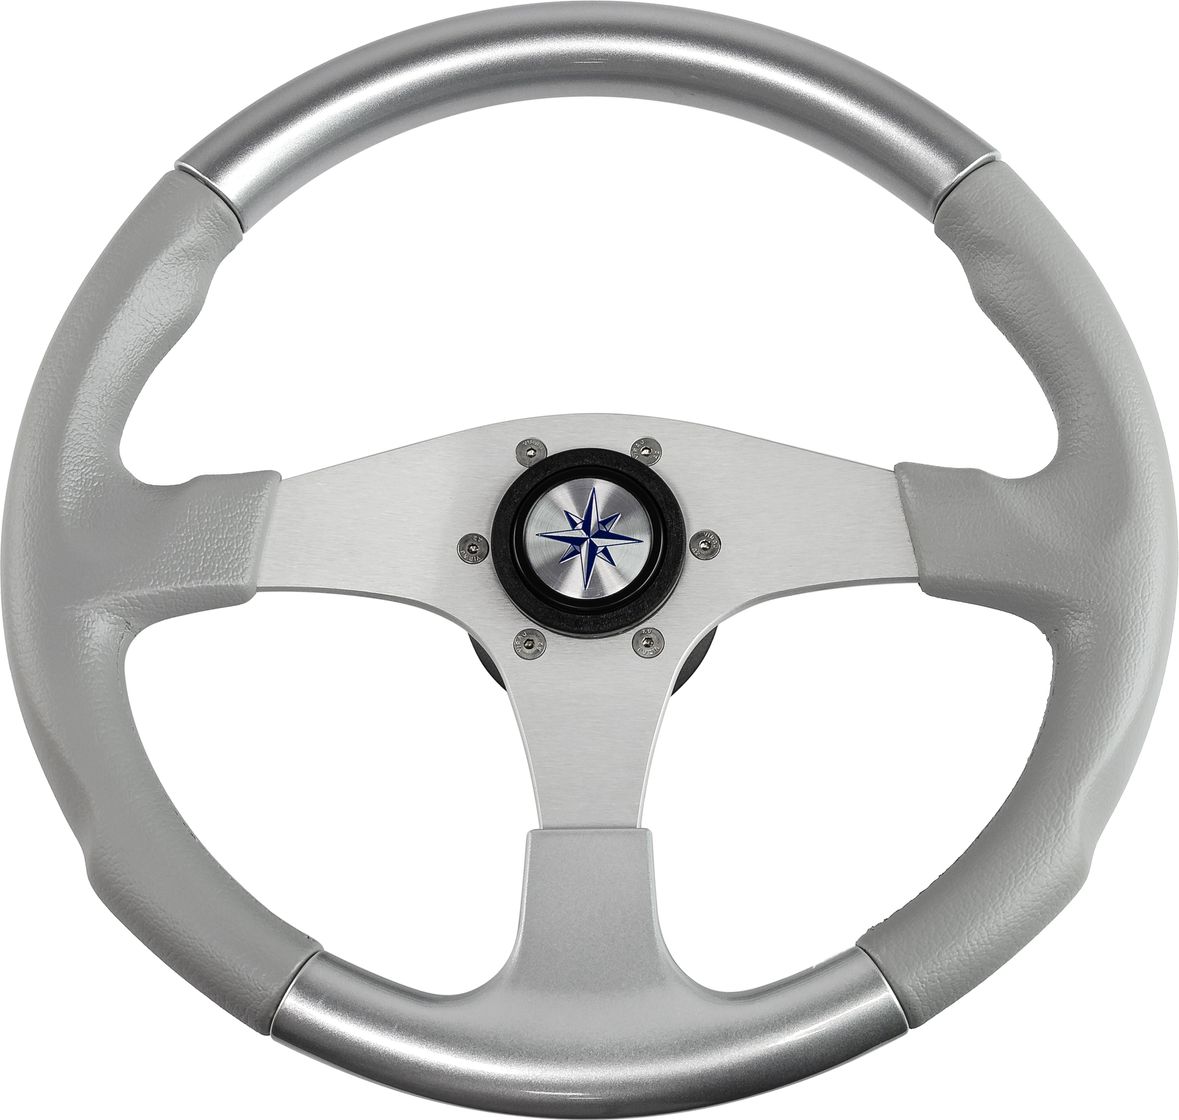 Рулевое колесо EVO MARINE 2 обод серосеребряный, спицы серебряные д. 355 мм VN850003-93 рулевое колесо riva rsl обод серый спицы серебряные д 360 мм vn735022 03